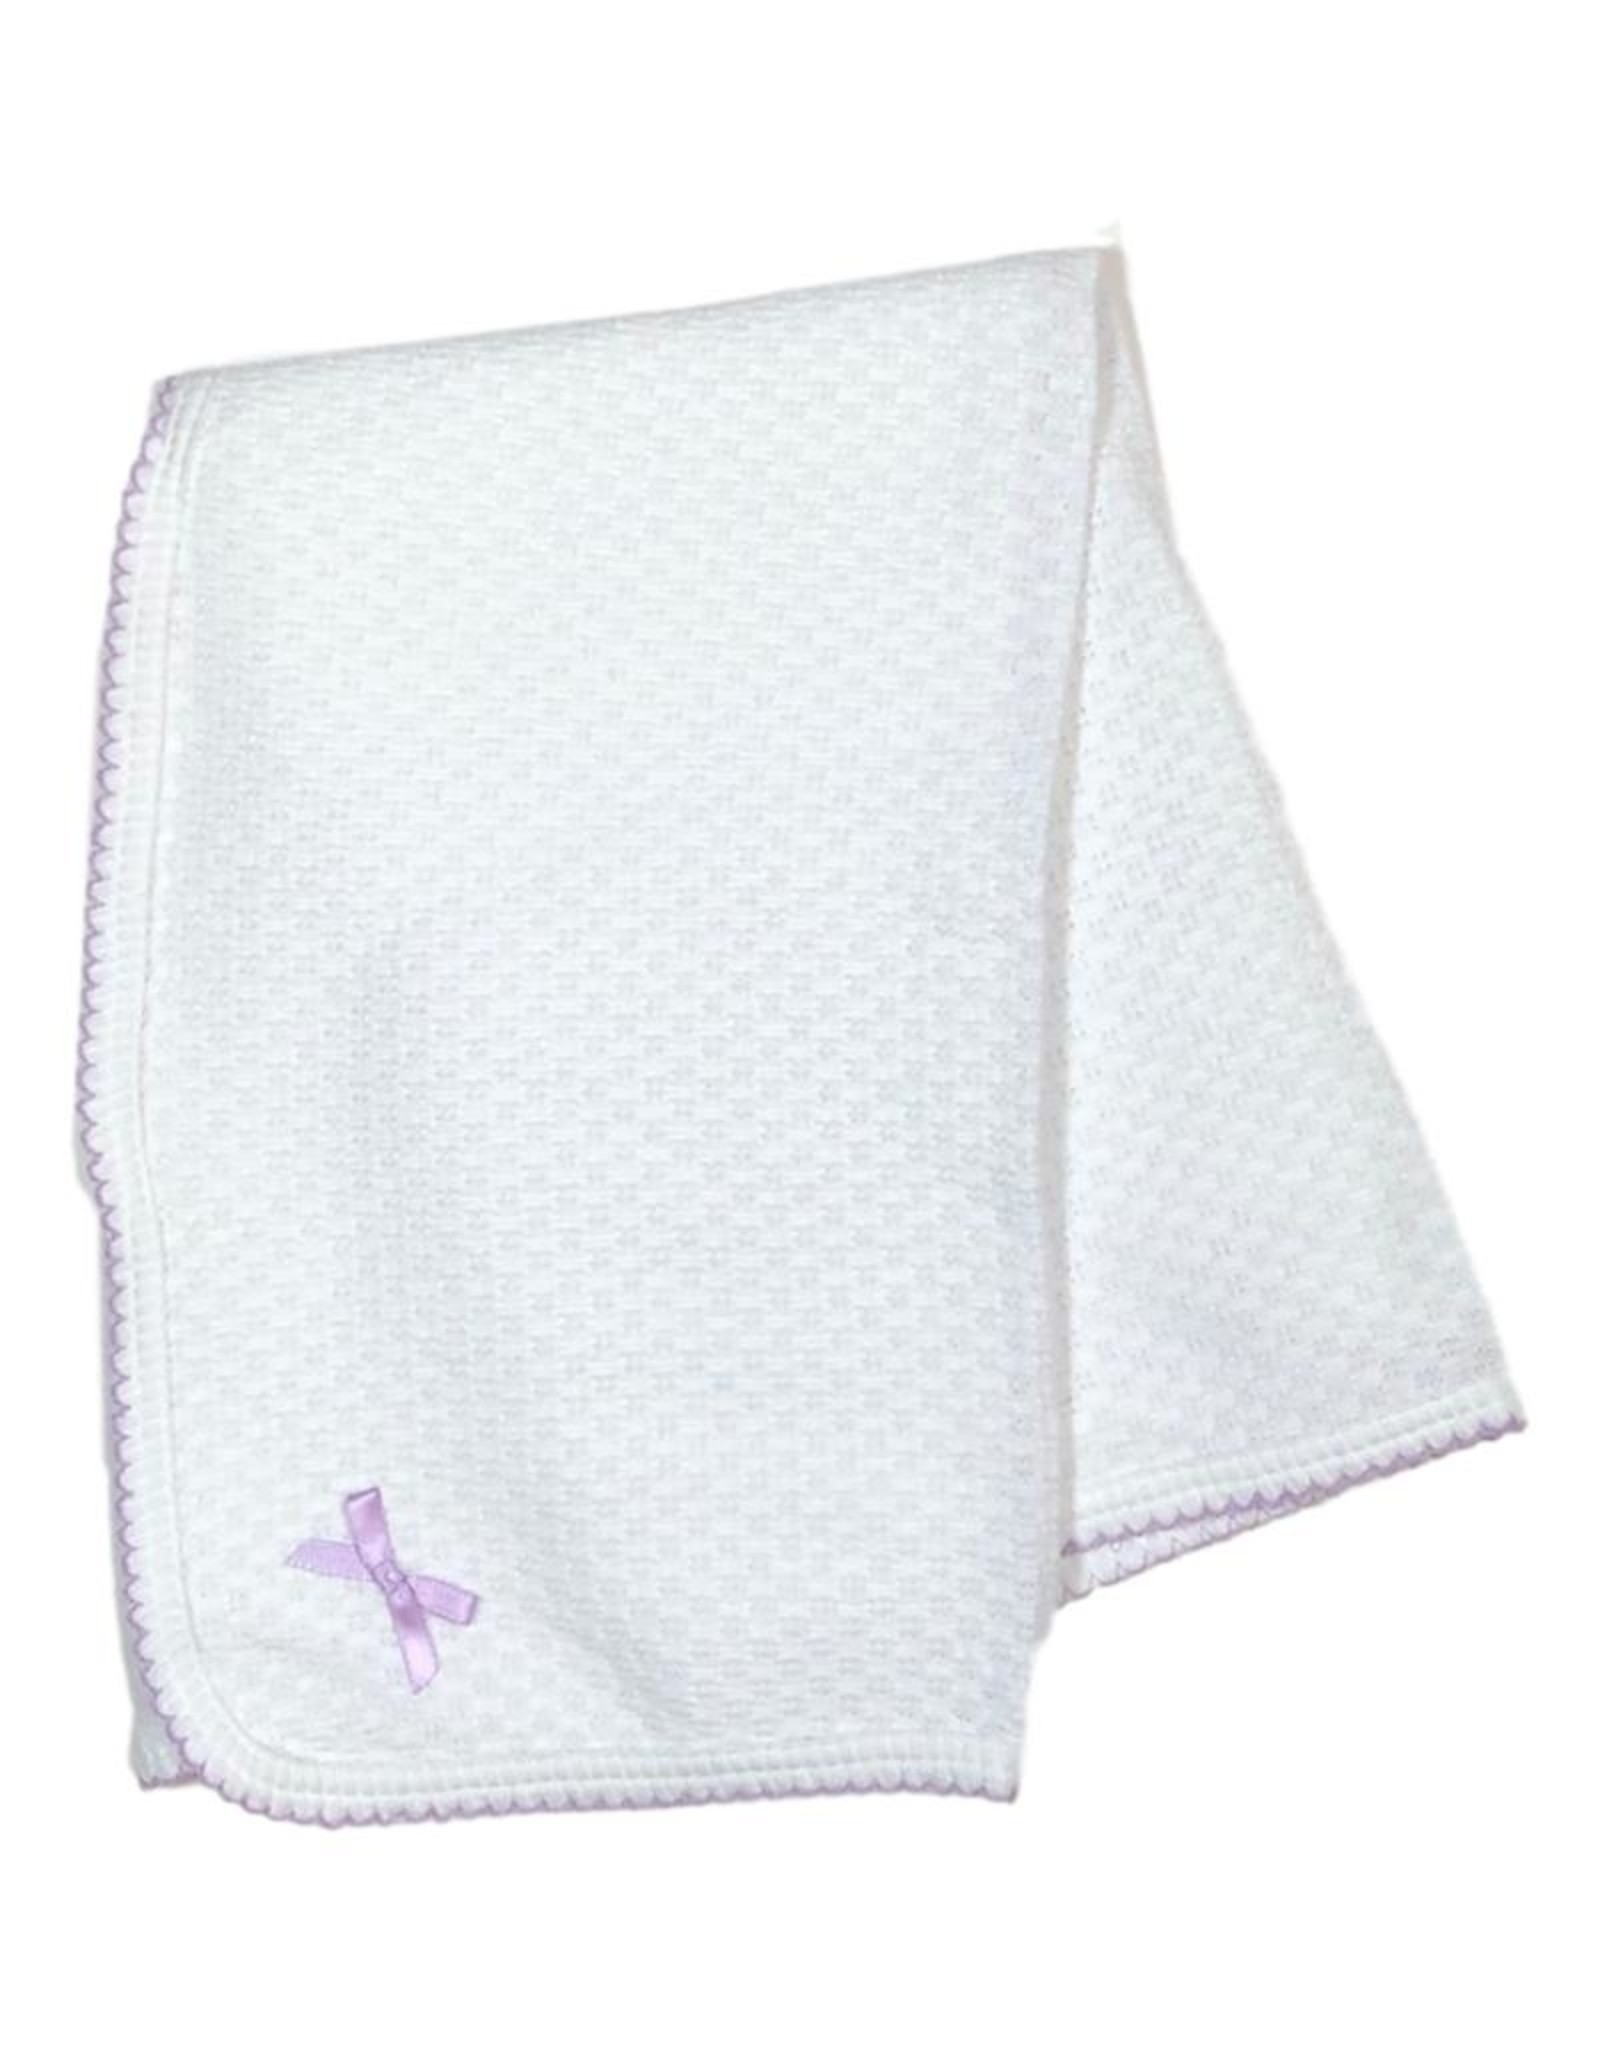 Paty, Inc. 107 Receiving Blanket Lavender